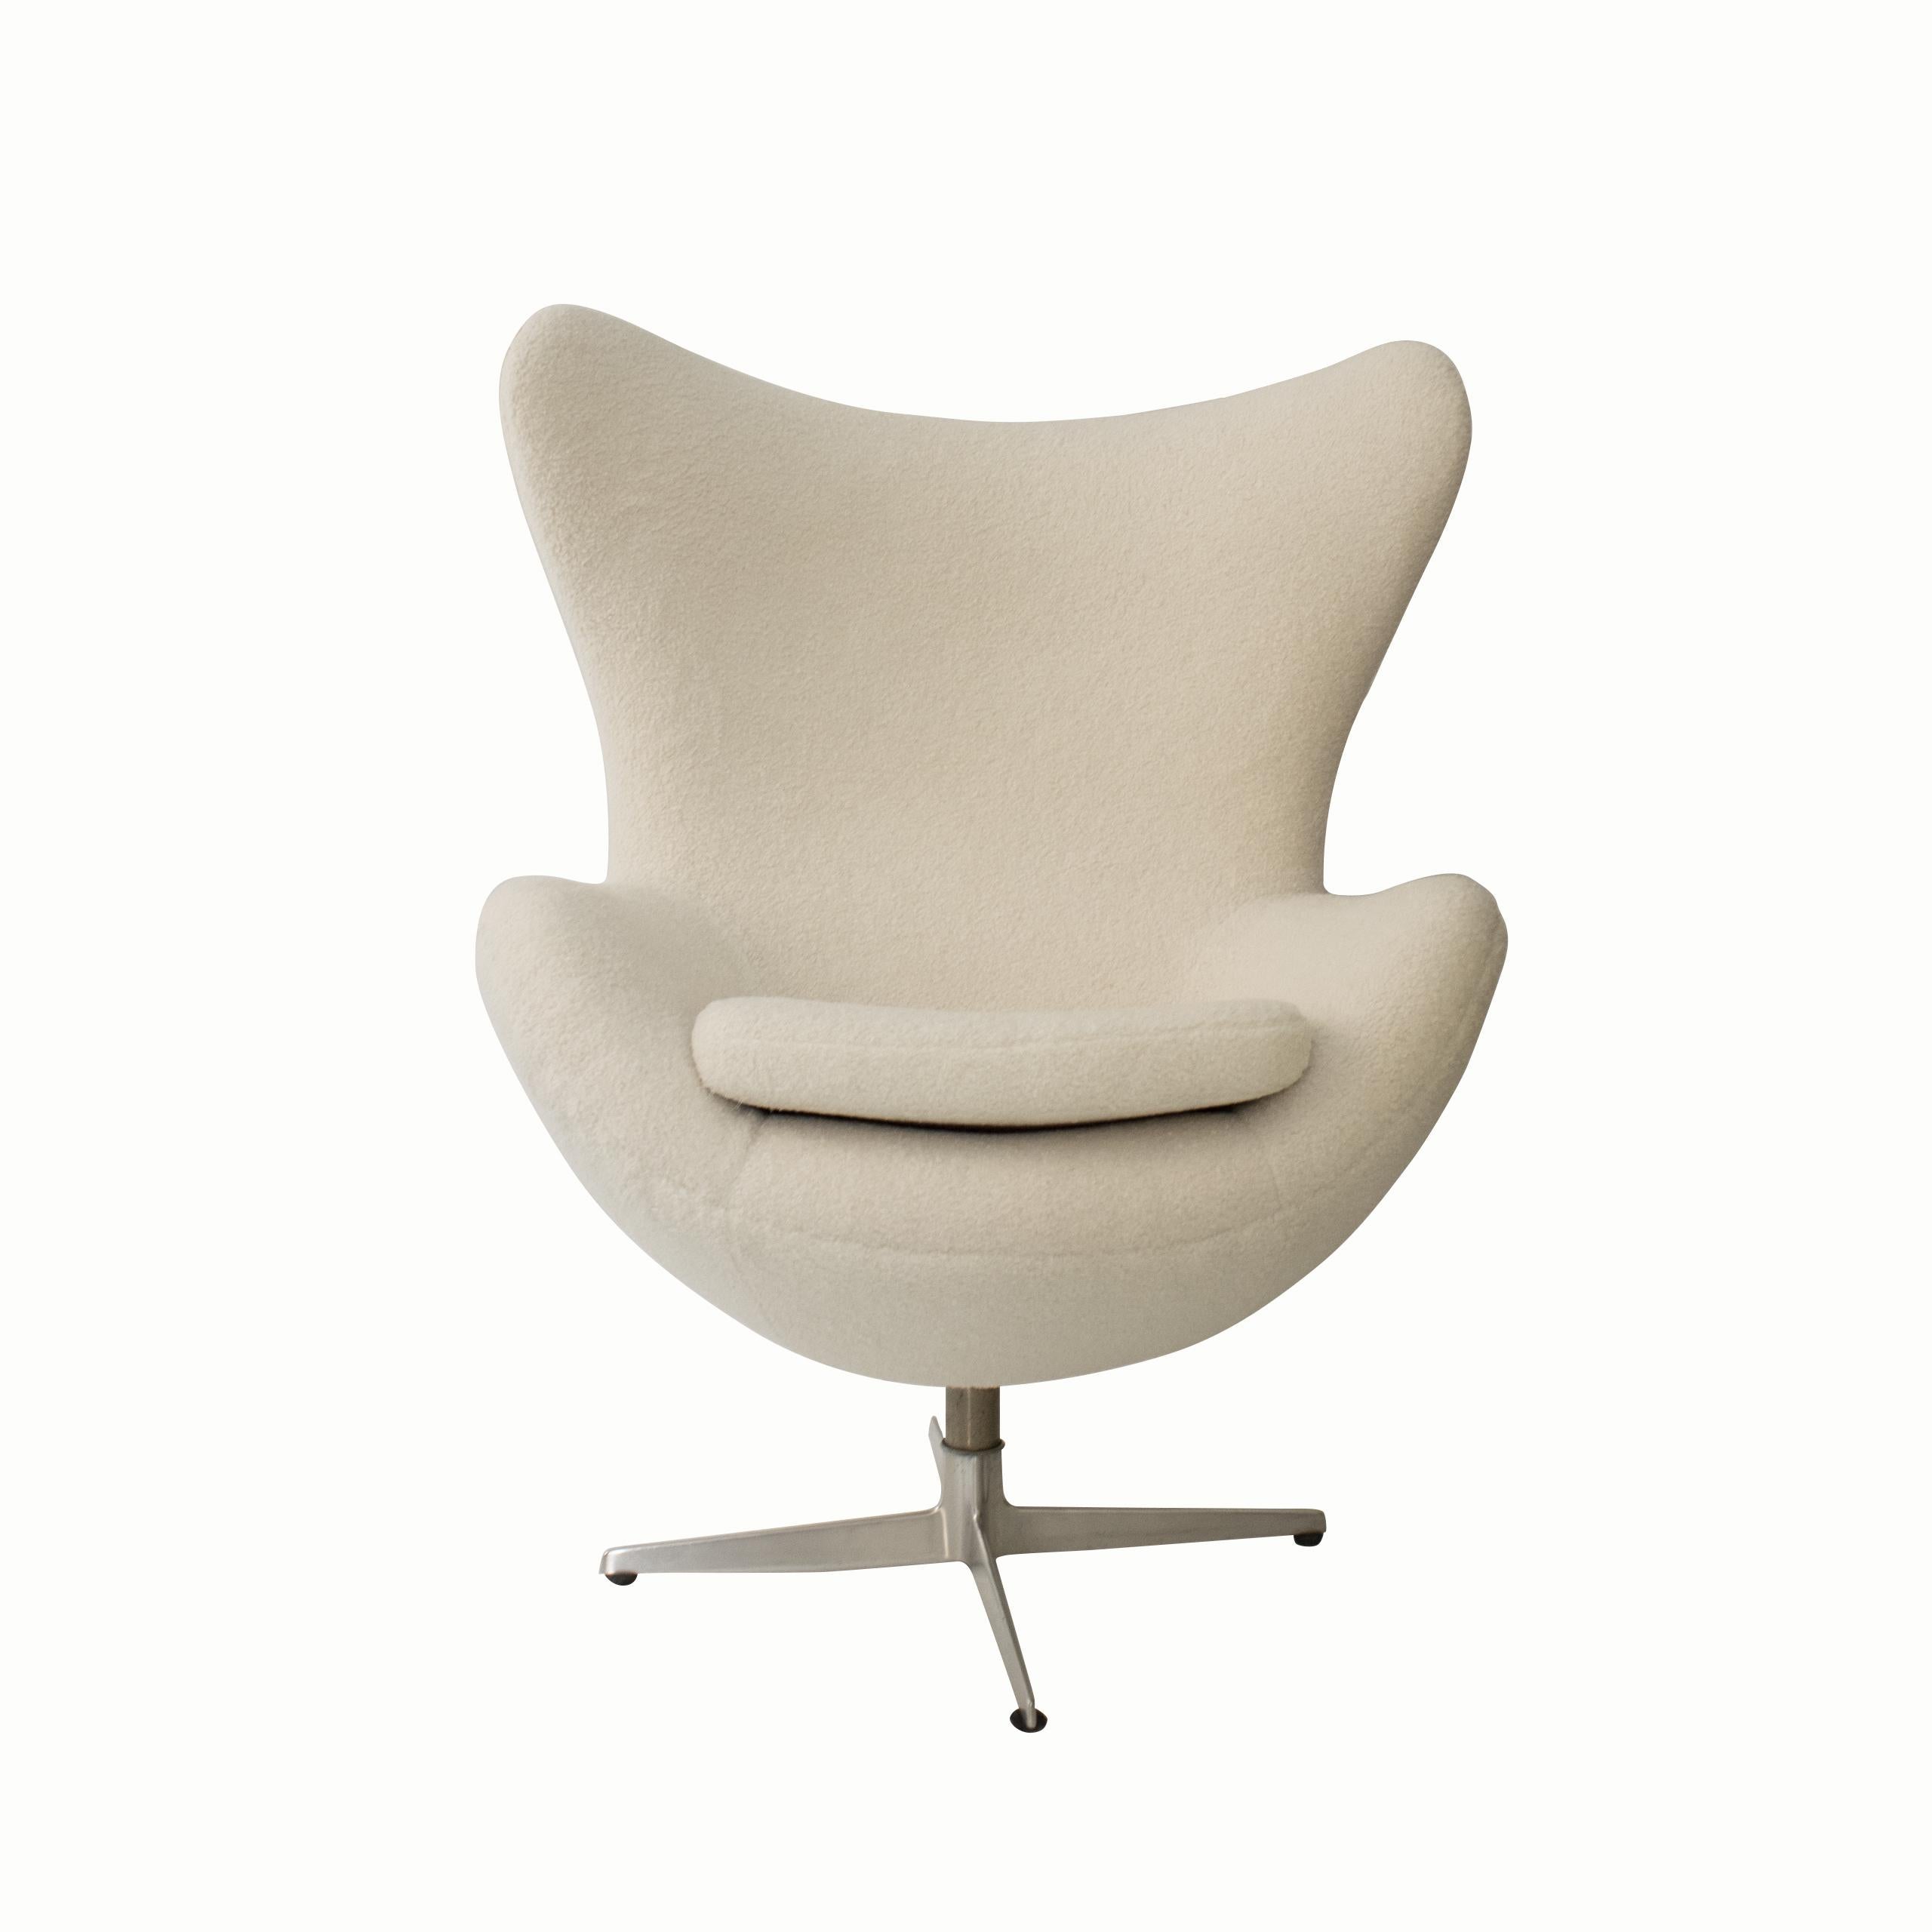  La chaise Egg a été conçue par Arne Jacobsen en 1958 pour l'hôtel SAS au Danemark. Elle est constituée d'un cadre en contreplaqué de bouleau recouvert d'un rembourrage en mousse et en tissu, une technique inaugurée par Jacobsen. Cet article a été